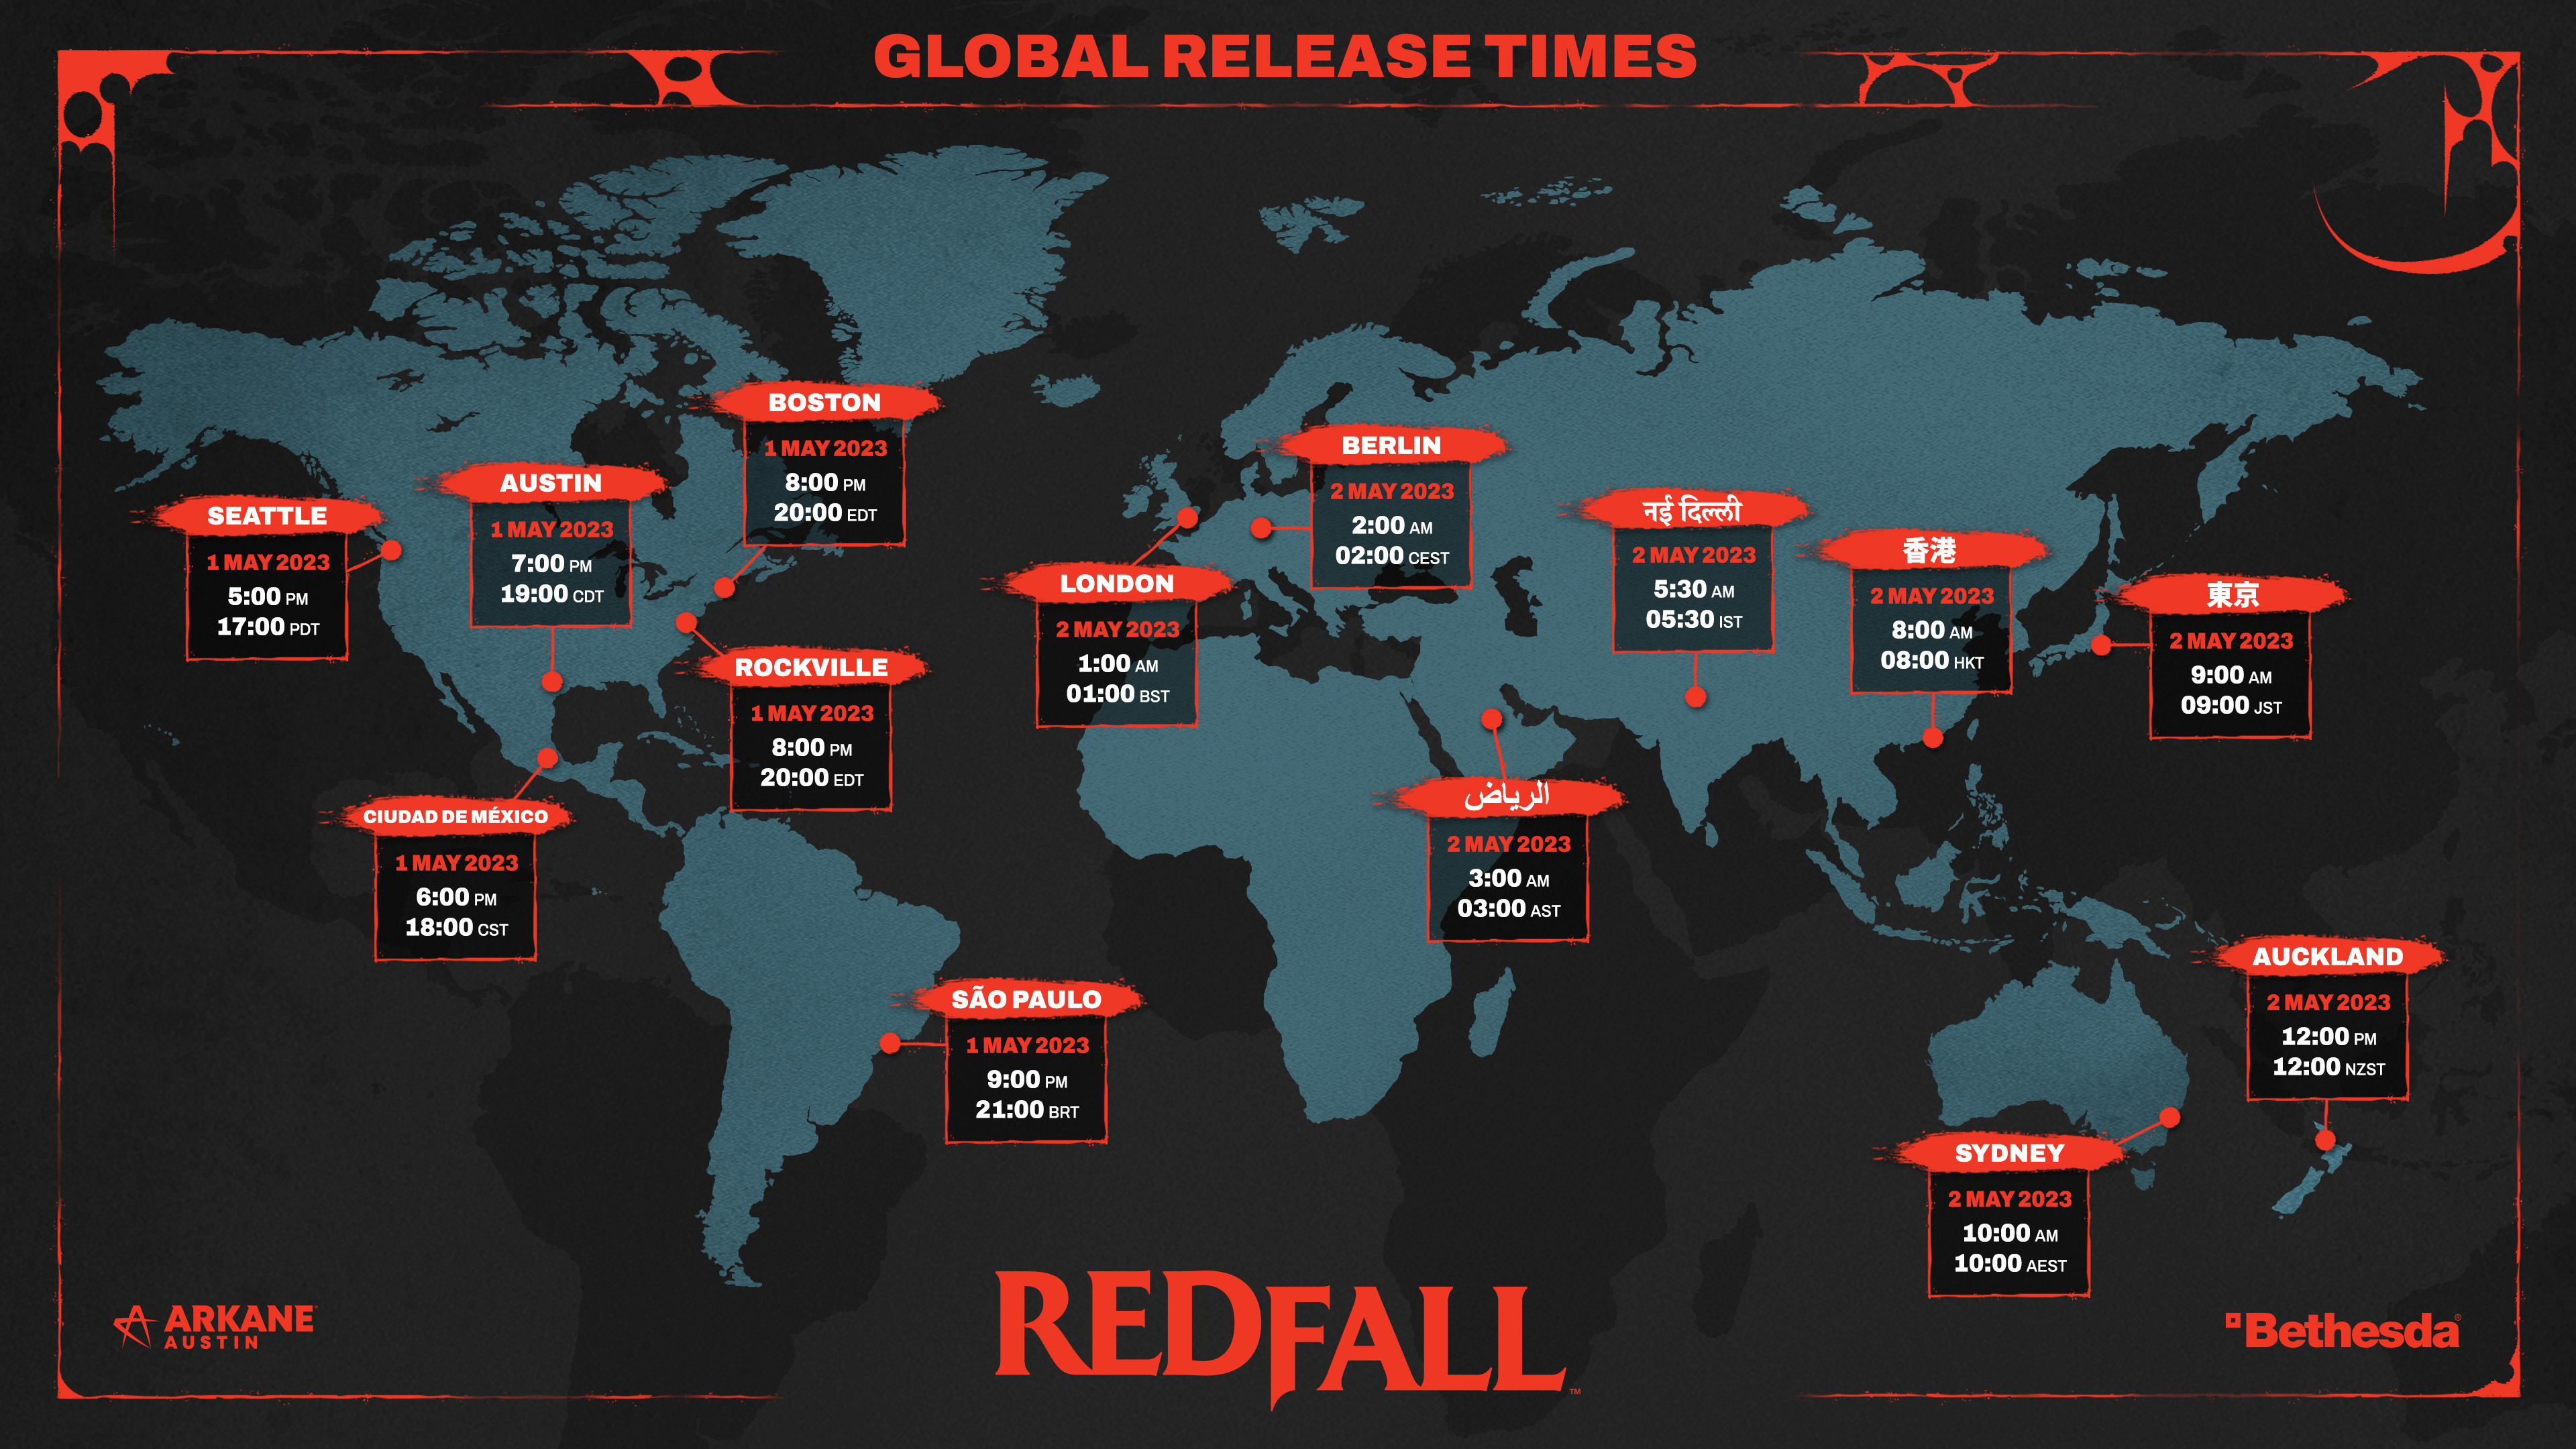 Carte globale des temps de déverrouillage de Redfall, transcrite dans le texte ci-dessous.